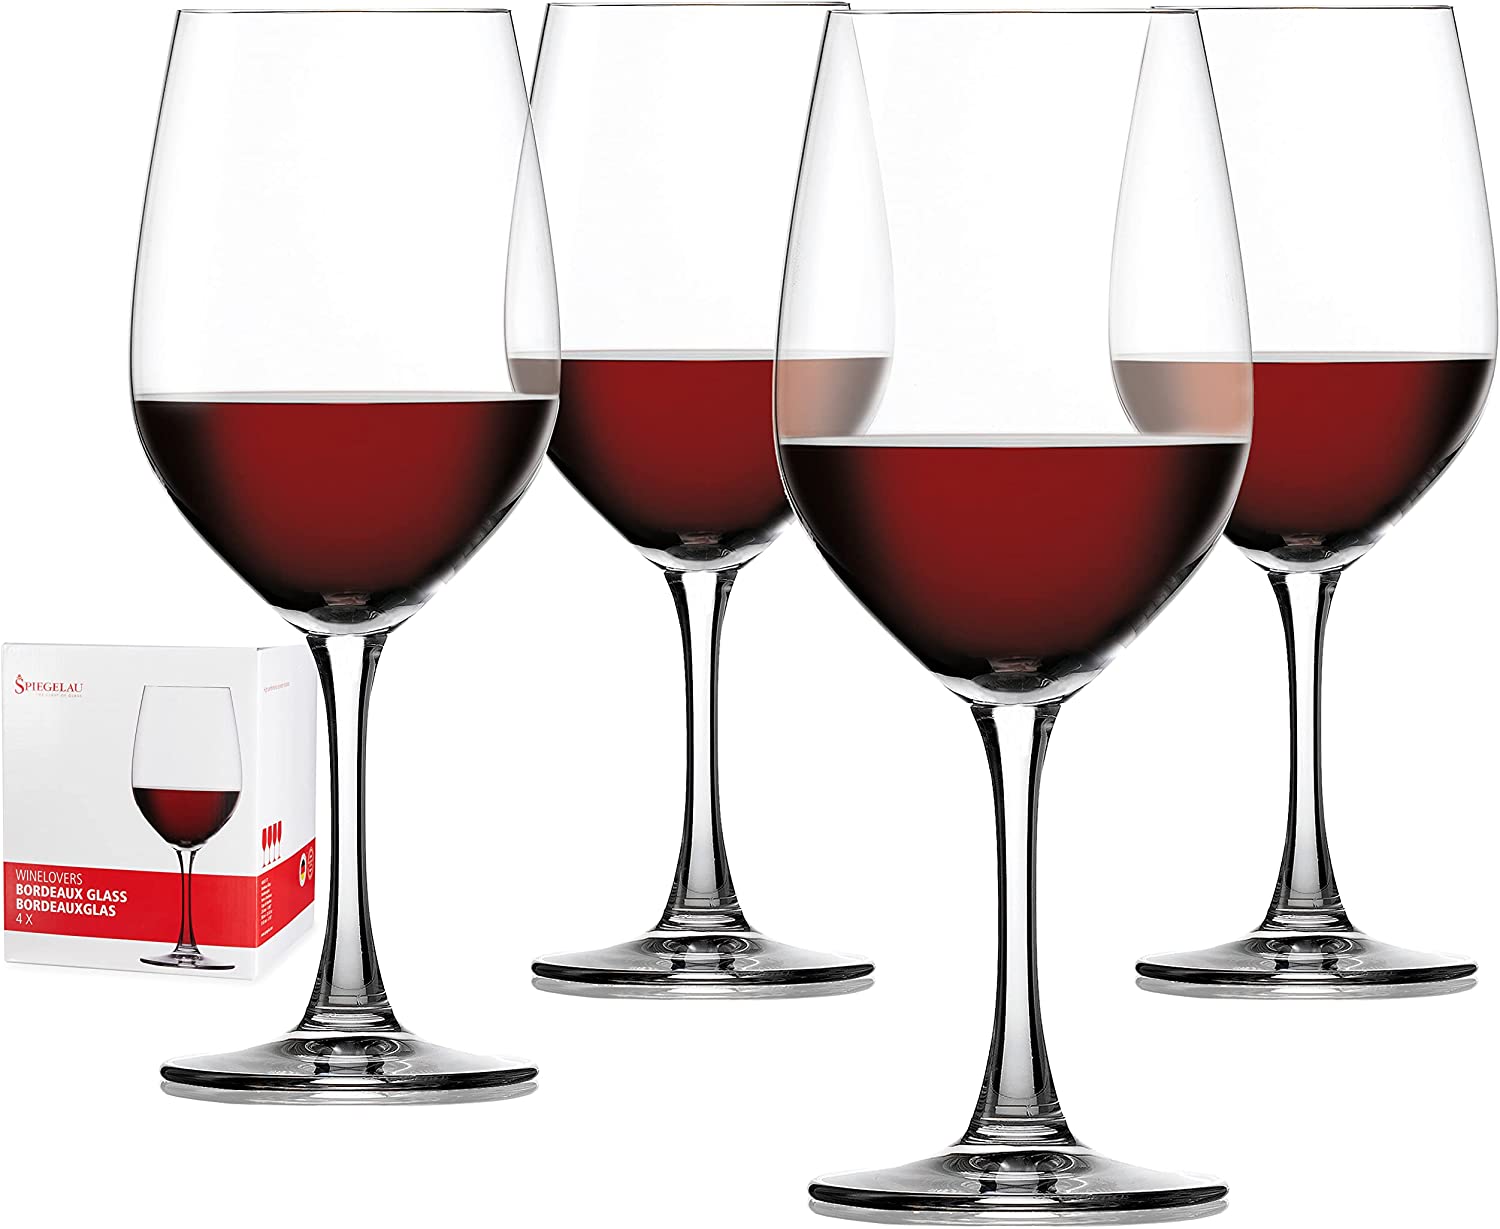 Spiegelau & Nachtmann Spiegelau Winelovers Red Wine Glasses, Set of 4